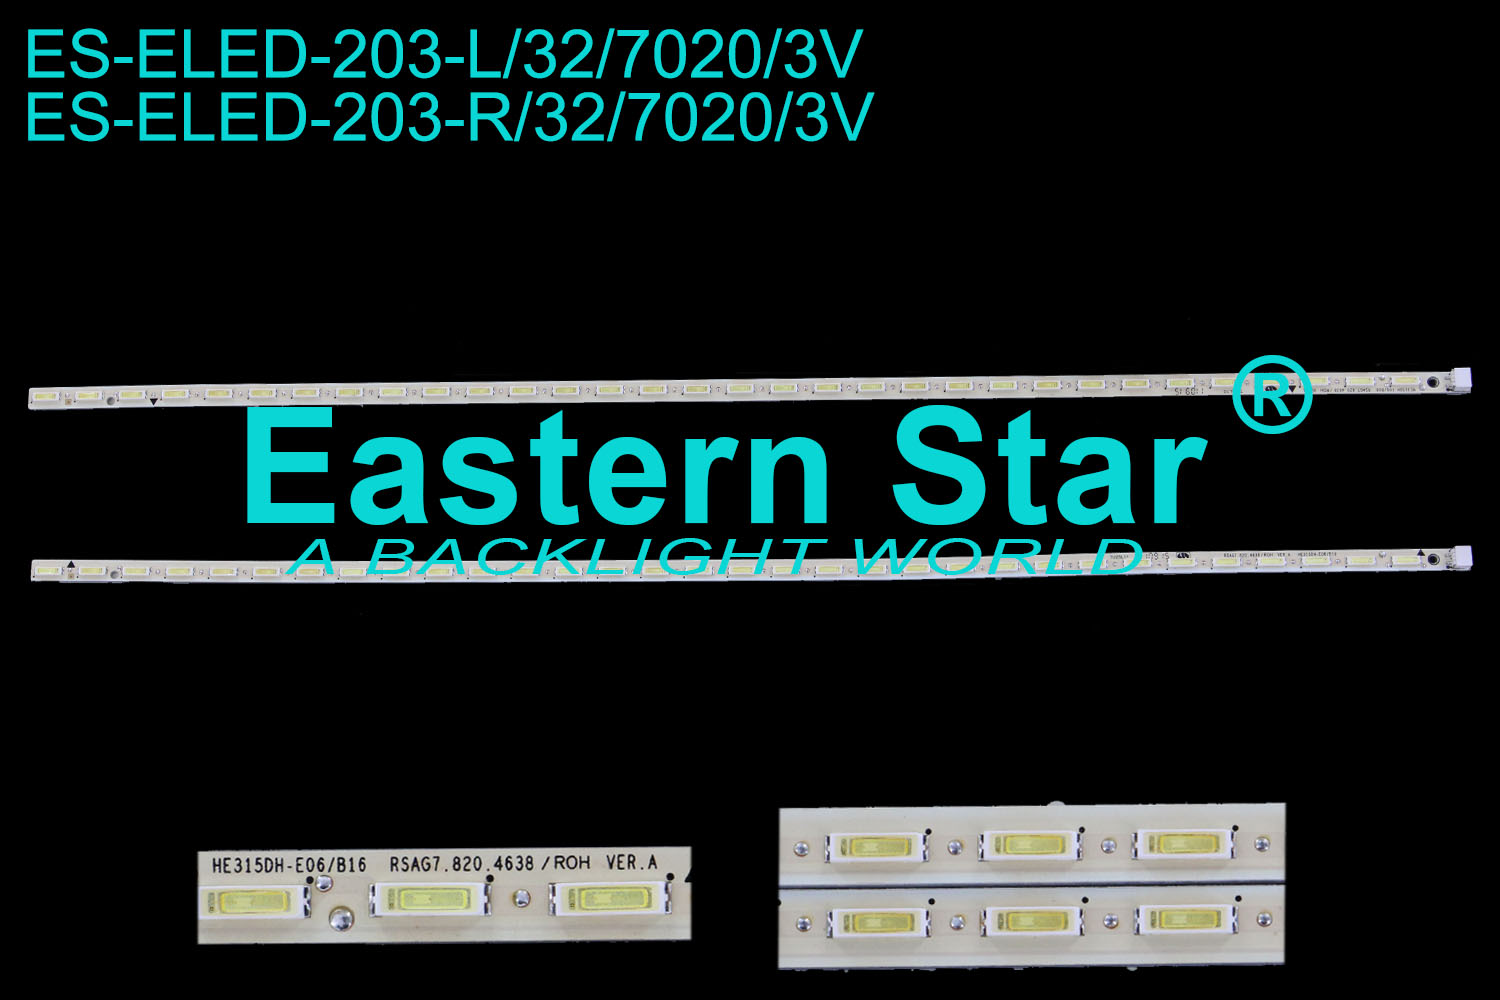 ES-ELED-203 ELED/EDGE TV backlight use for Hisense 32'' 32LEDs LED STRIPS(2)